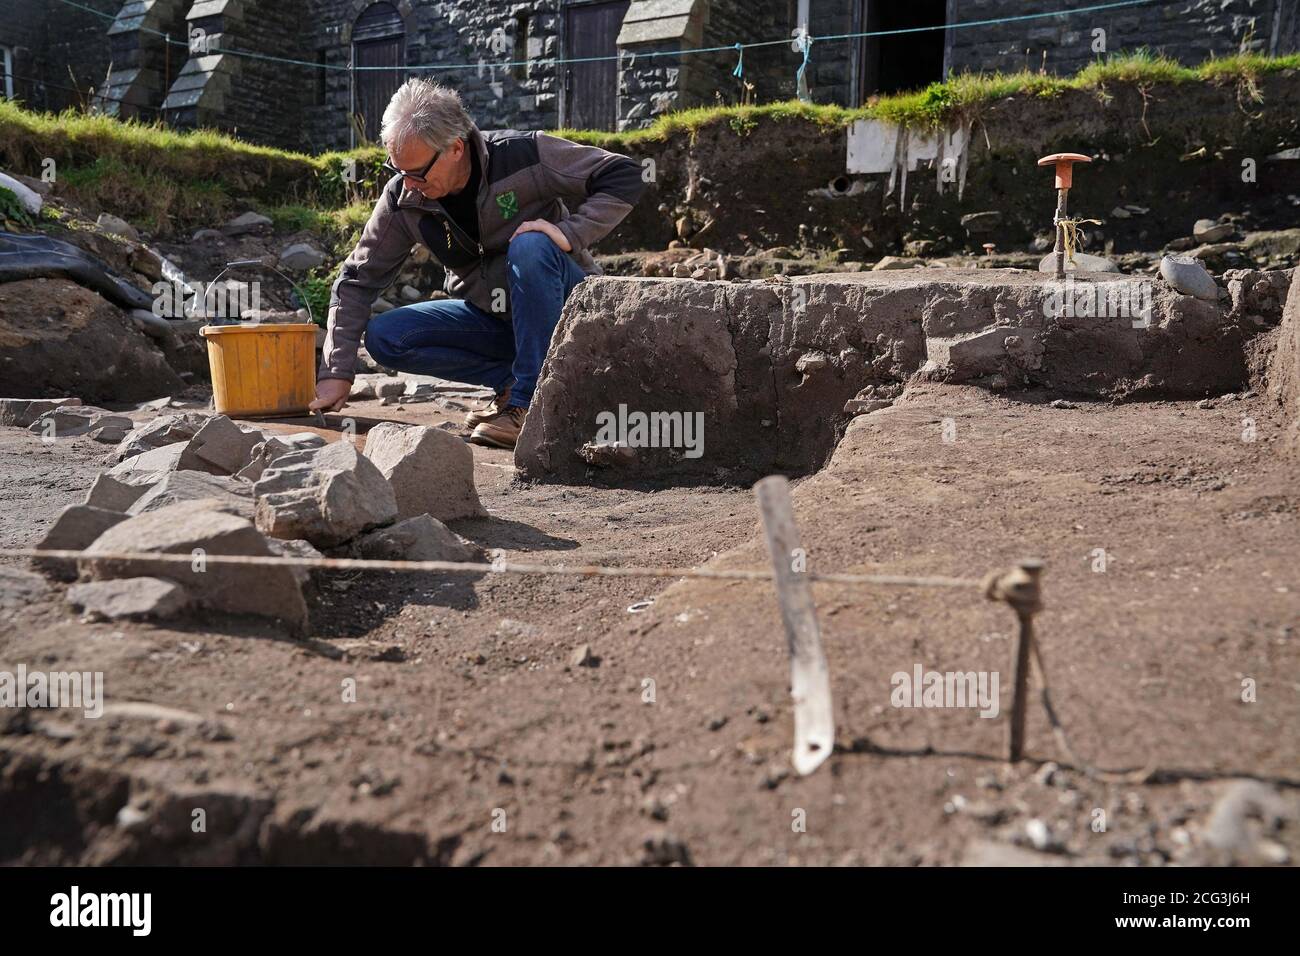 Graeme Young, Archäologe und Direktor des Bamburgh Research Project, in Bamburgh Castle, Northumberland, wo Freiwillige die Grundlagen eines seltenen Rundhauses gefunden haben, das über 2000 Jahre alt sein könnte. Die Freiwilligen, die ihr jährliches Feldprojekt auf der Burg beendeten, entschieden sich in letzter Minute, noch ein paar Zentimeter Boden auszugraben und enthüllten die Fundamente eines "substantialen" Rundhauses mit einem Durchmesser von etwa 12 Metern. Es wird angenommen, dass die ursprüngliche Struktur über 2000 Jahre alt sein könnte, aus der römischen Besetzung von Großbritannien, und halten wichtige Hinweise auf den Übergang von der Rom Stockfoto